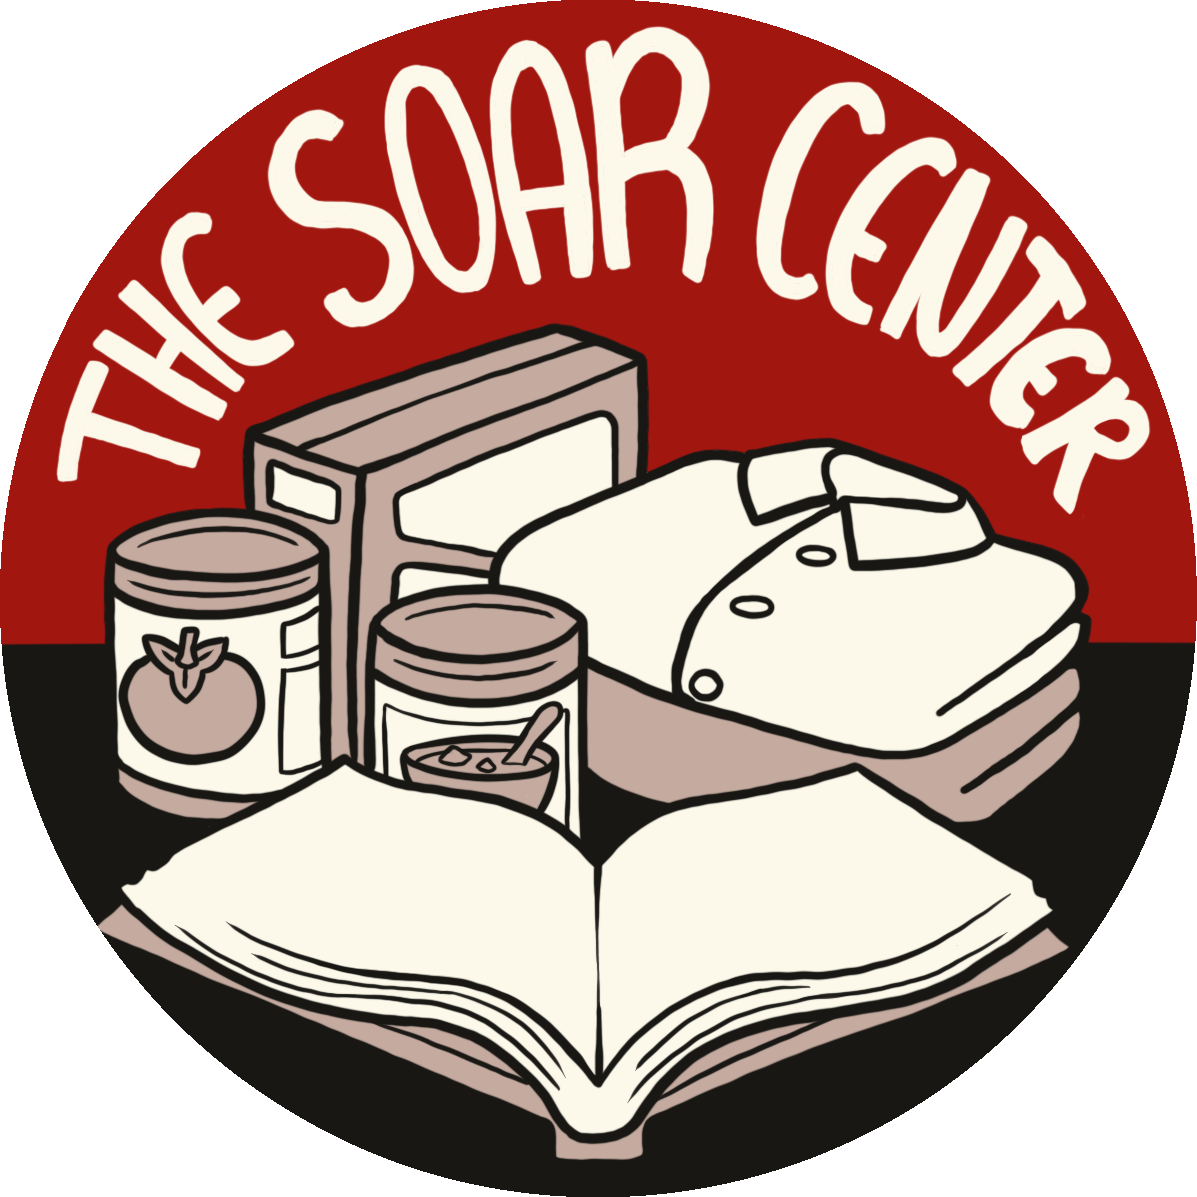 The new SOAR Center logo.